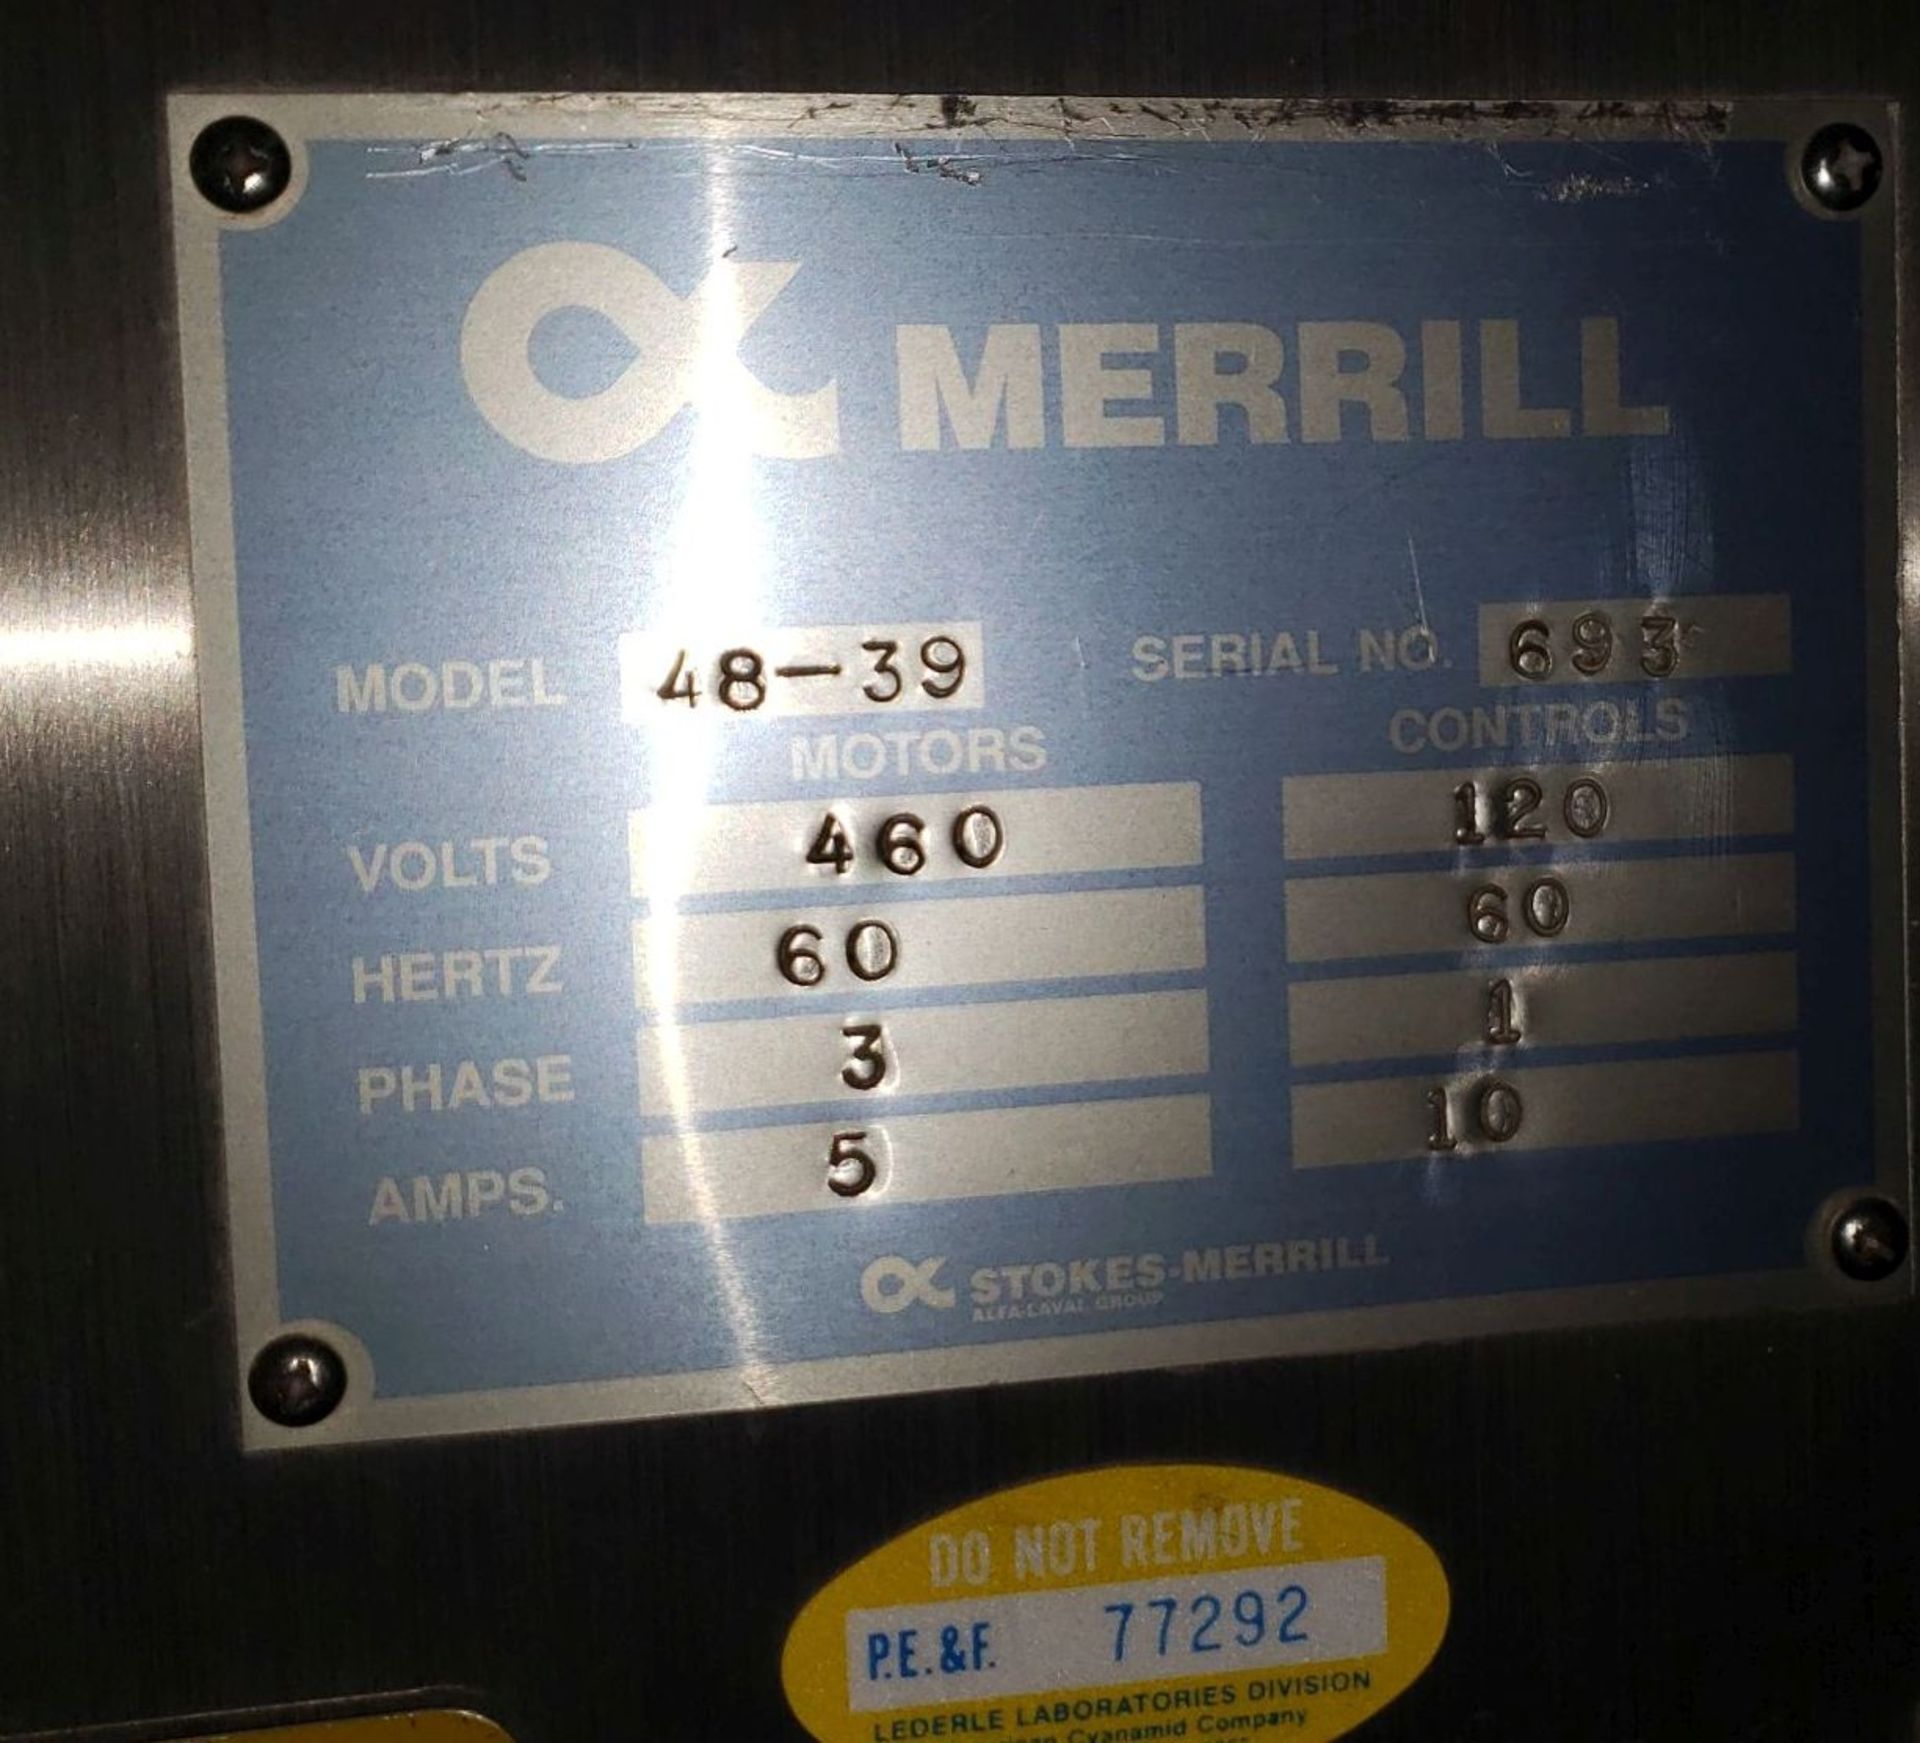 Merrill slat counter, model 48-39, serial# 693 - Image 10 of 41